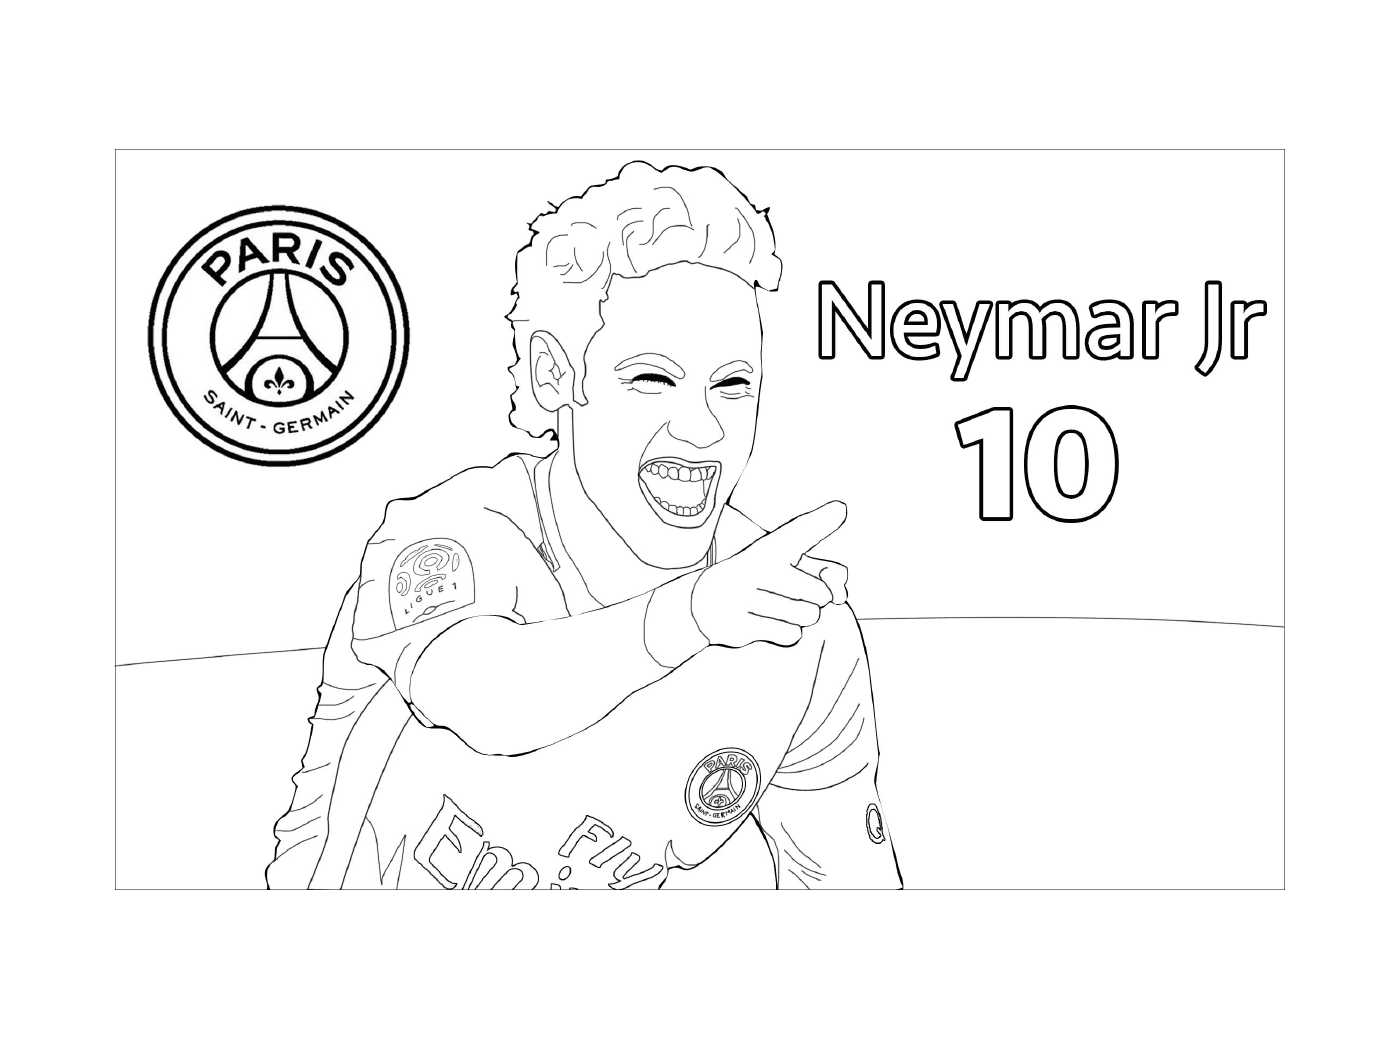 coloriage joueur de foot neymar jr psg